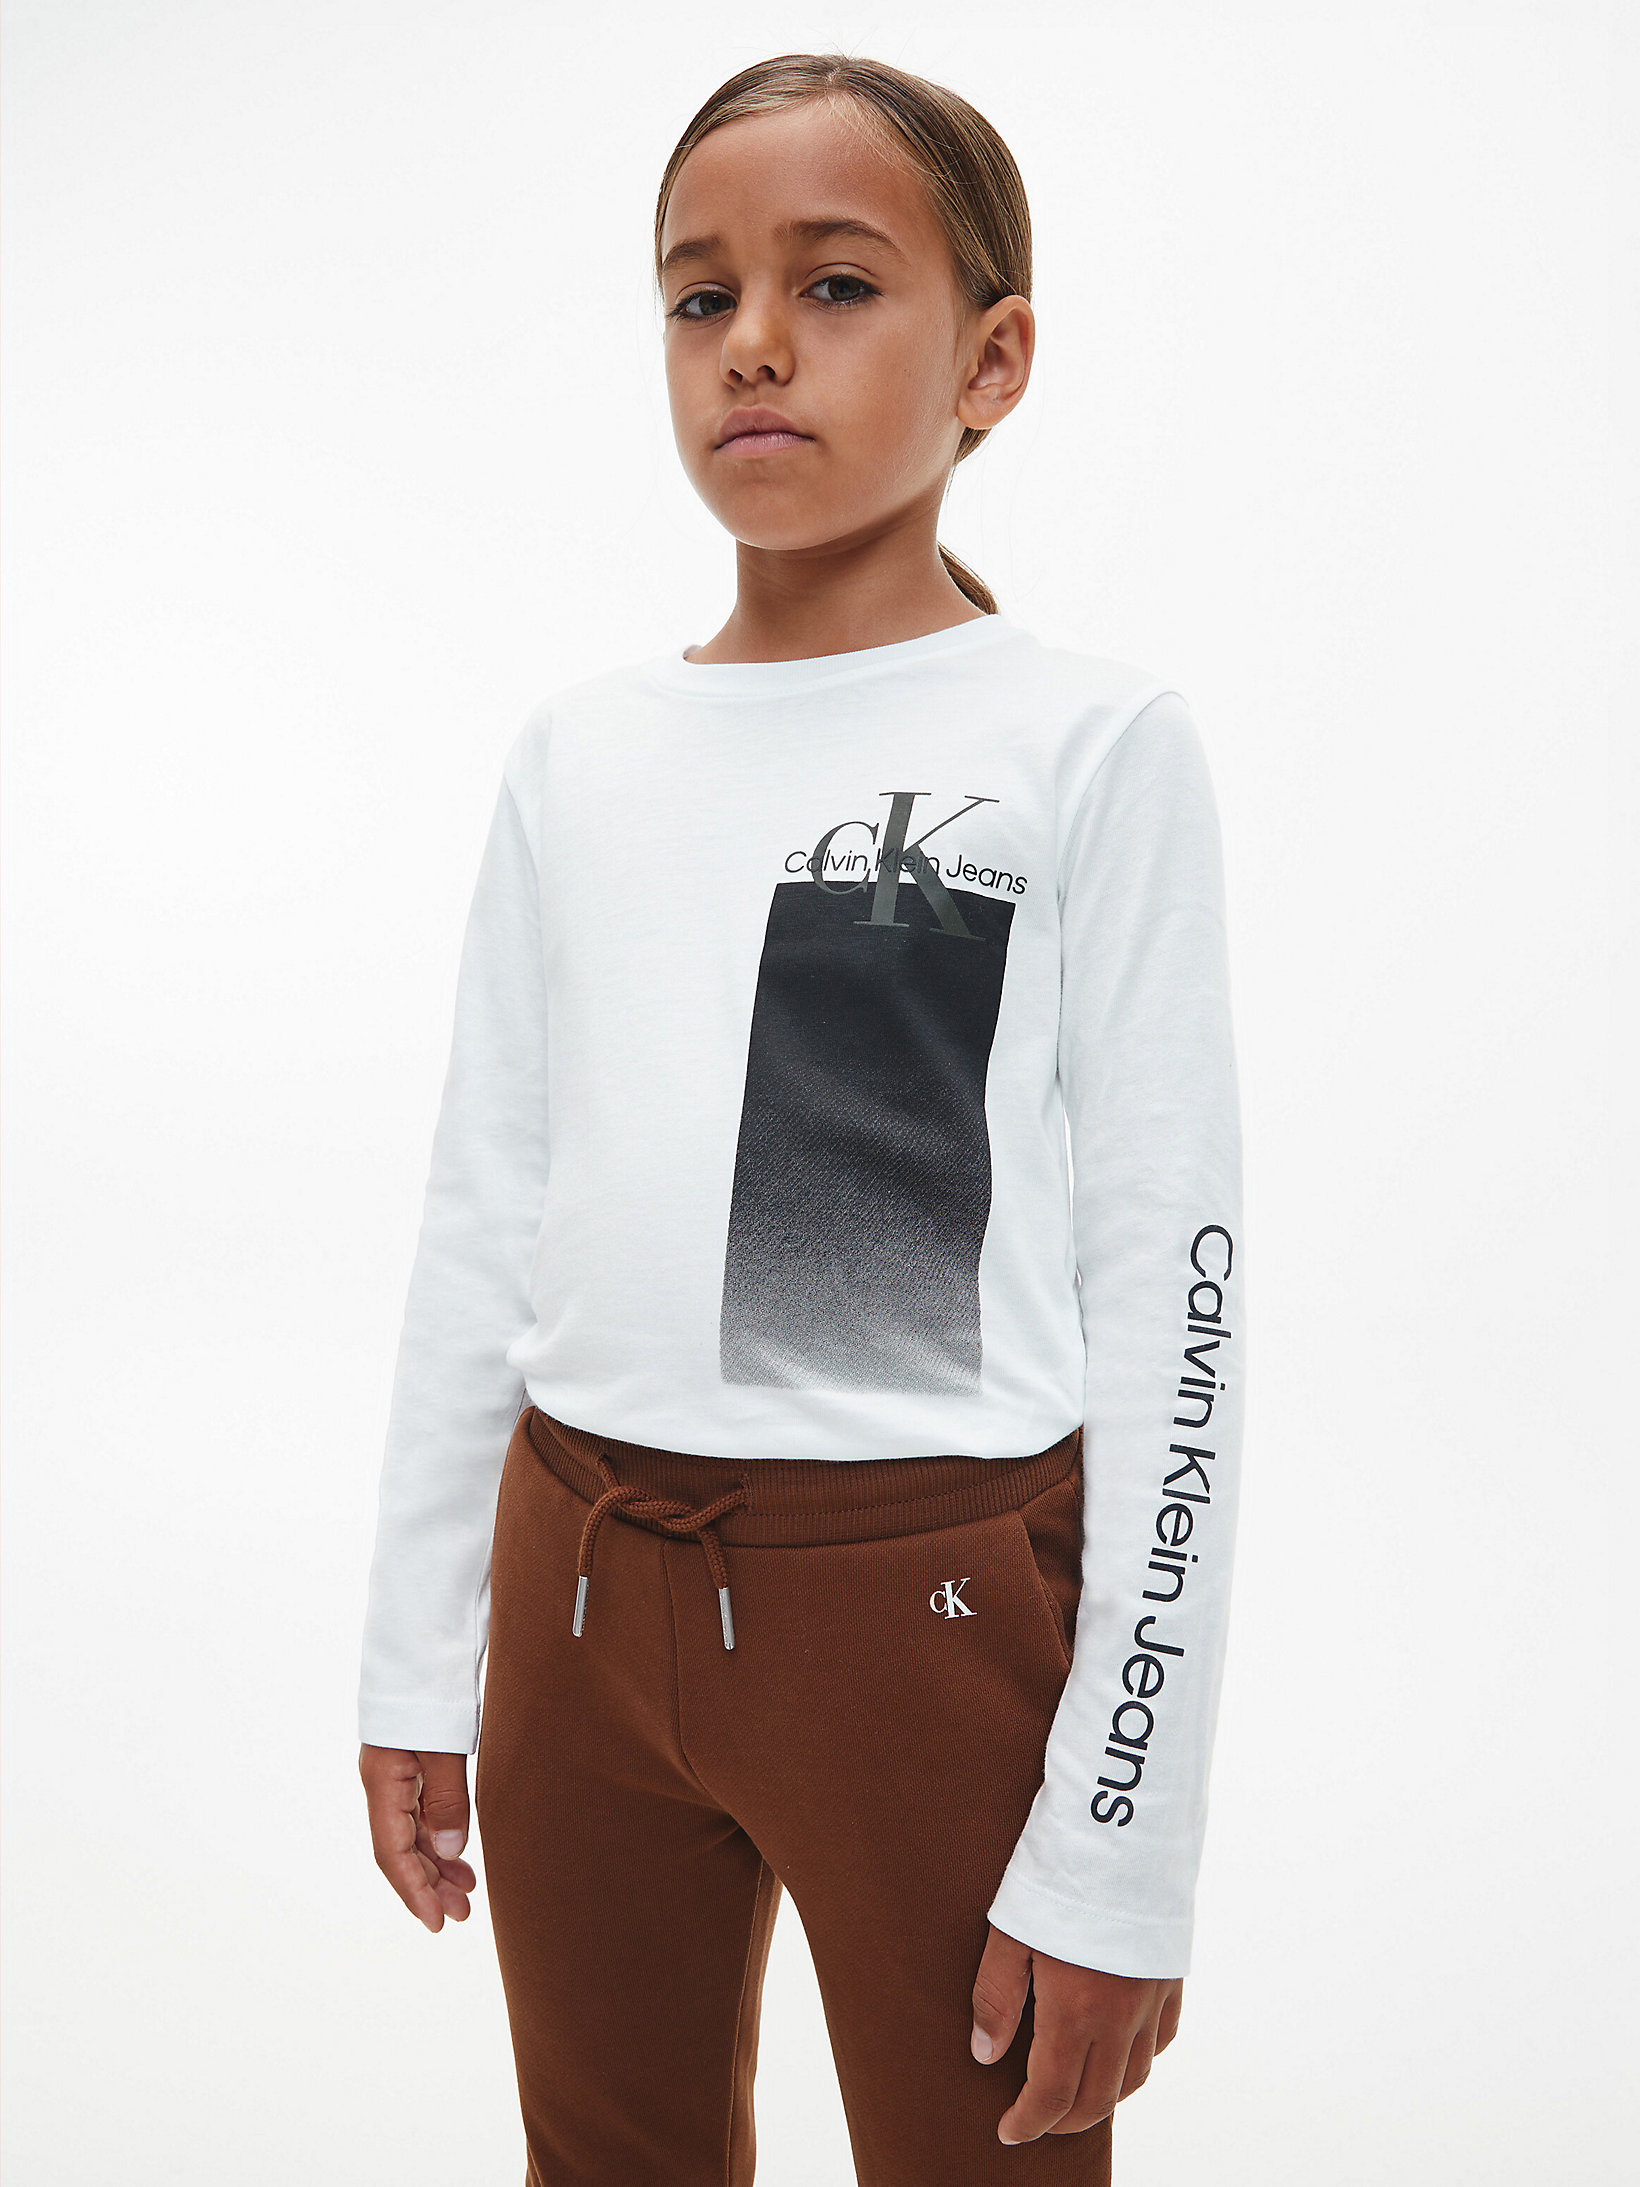 CK Standards T-shirt a maniche lunghe unisex Calvin Klein Abbigliamento Top e t-shirt T-shirt T-shirt a maniche lunghe 